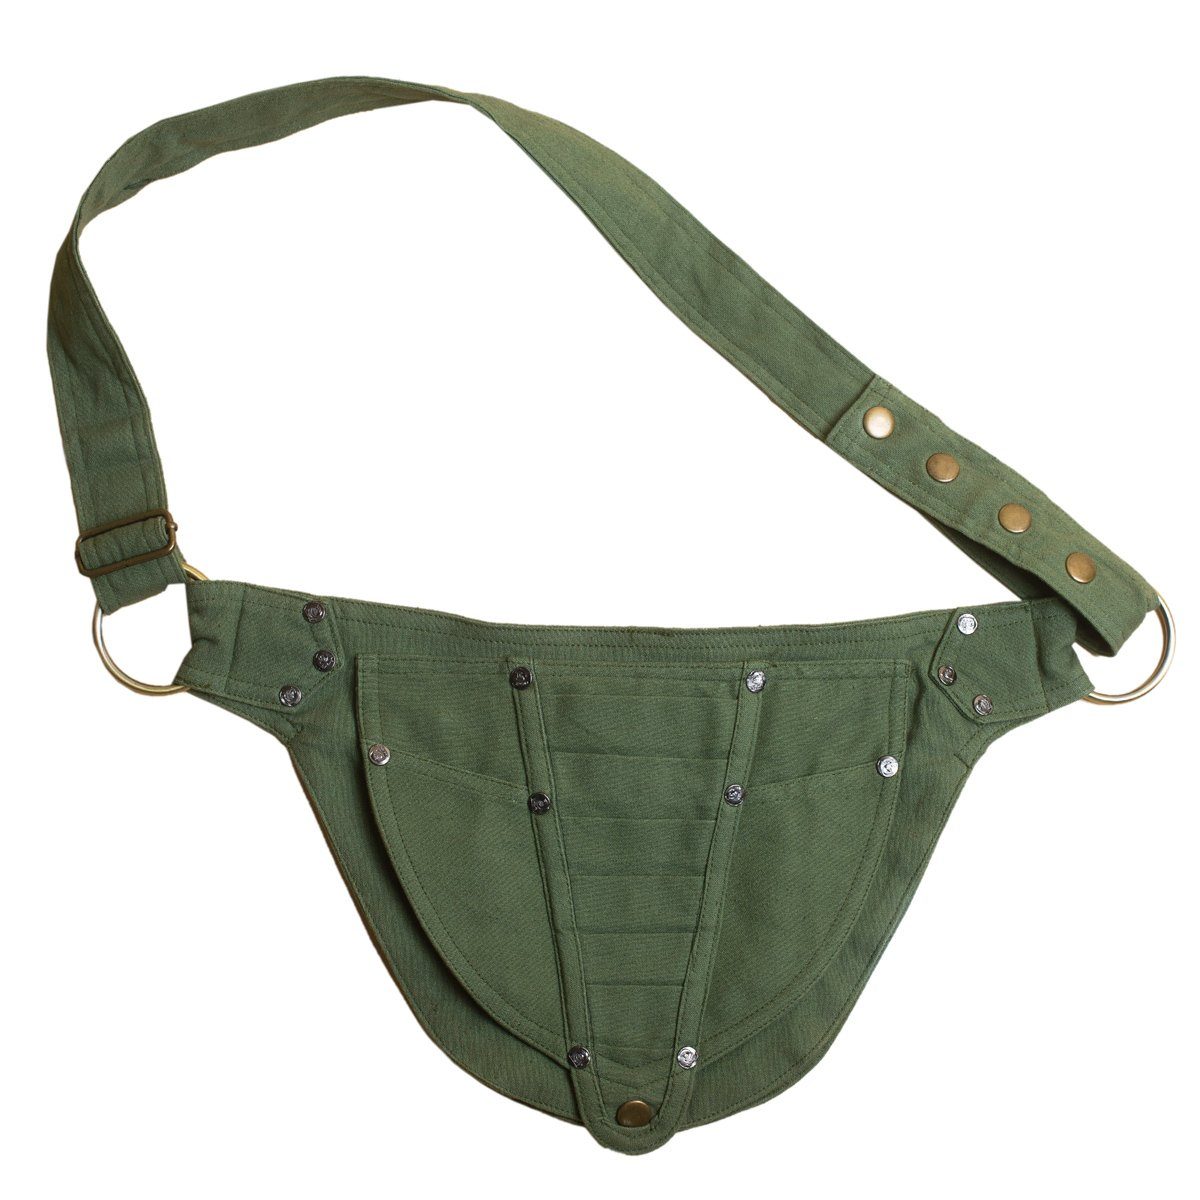 PANASIAM Bauchtasche Geräumige Gürteltasche aus fester Baumwolle lässt sich als Hüfttasche, Bauchtasche oder kleine Umhängetasche tragen mit 2 Innentaschen Grün